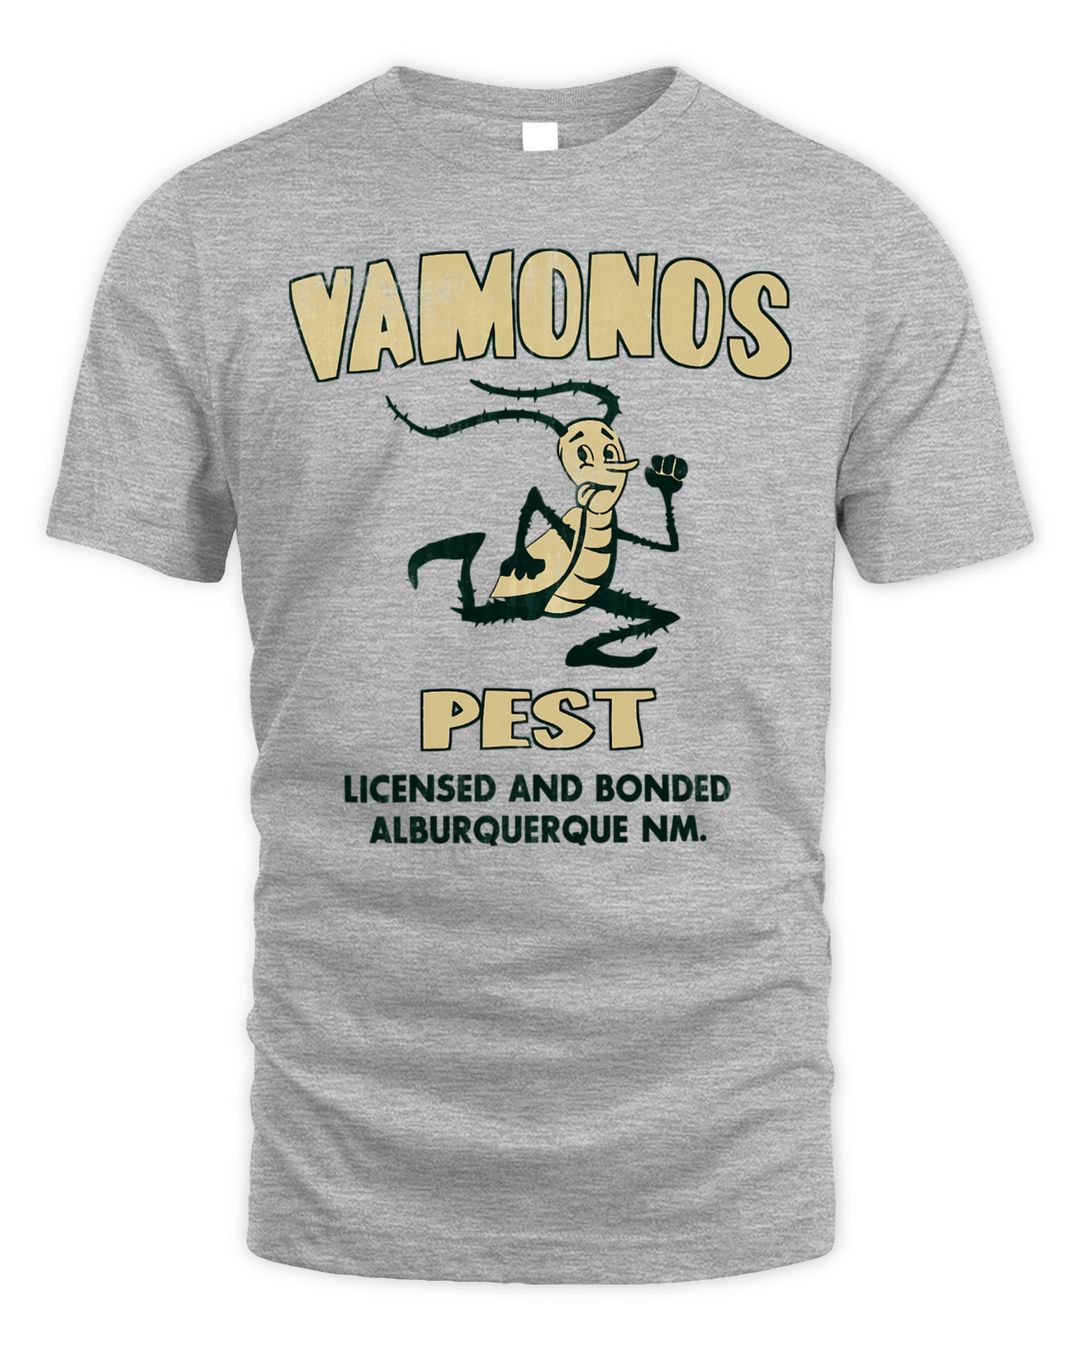 Better Call Saul Merch Vamonos Pest T-Shirt